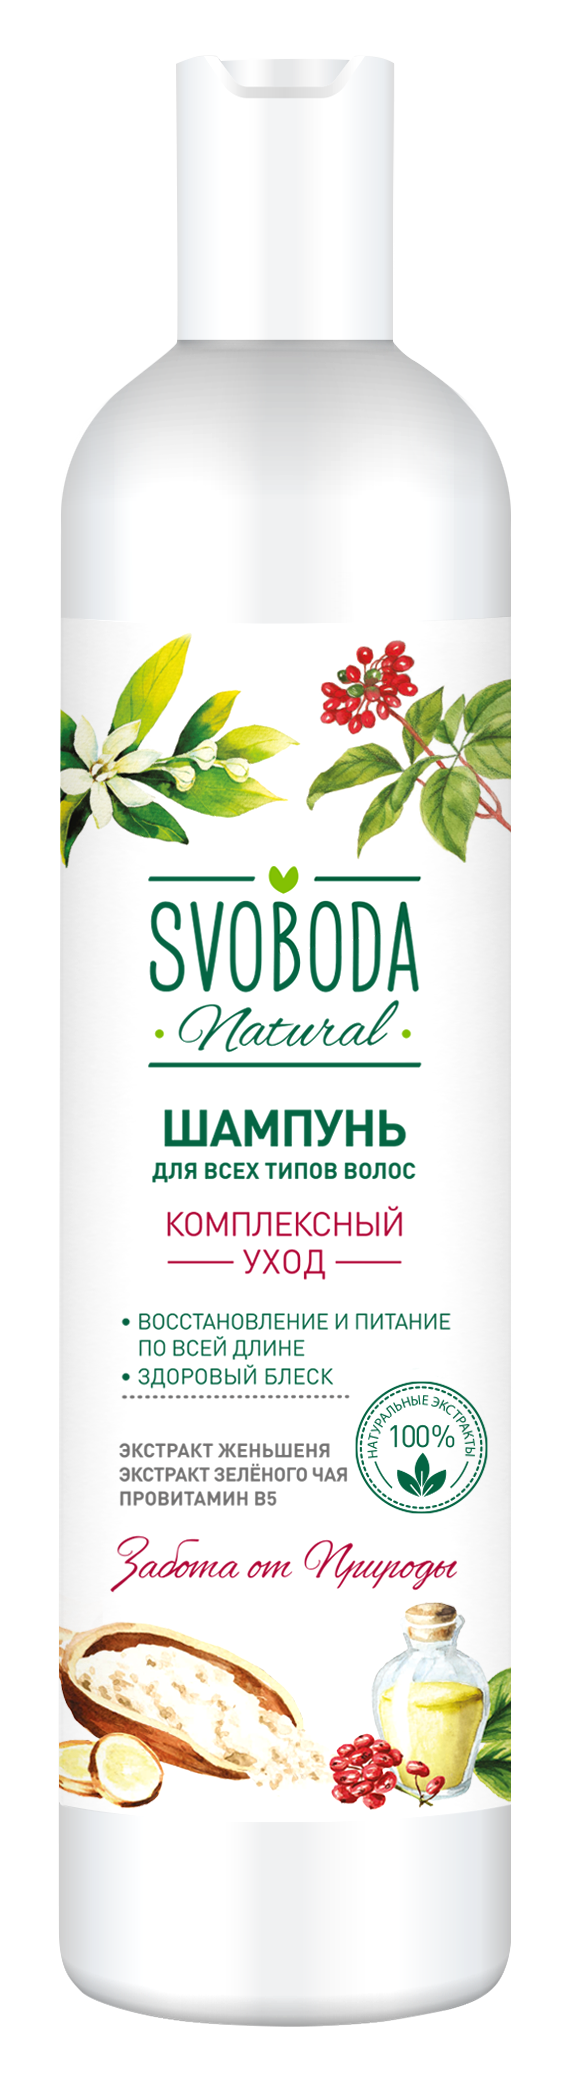 Шампунь SVOBODA для всех типов волос экстракт женьшеня,экстракт зеленого чая,провитамин B5